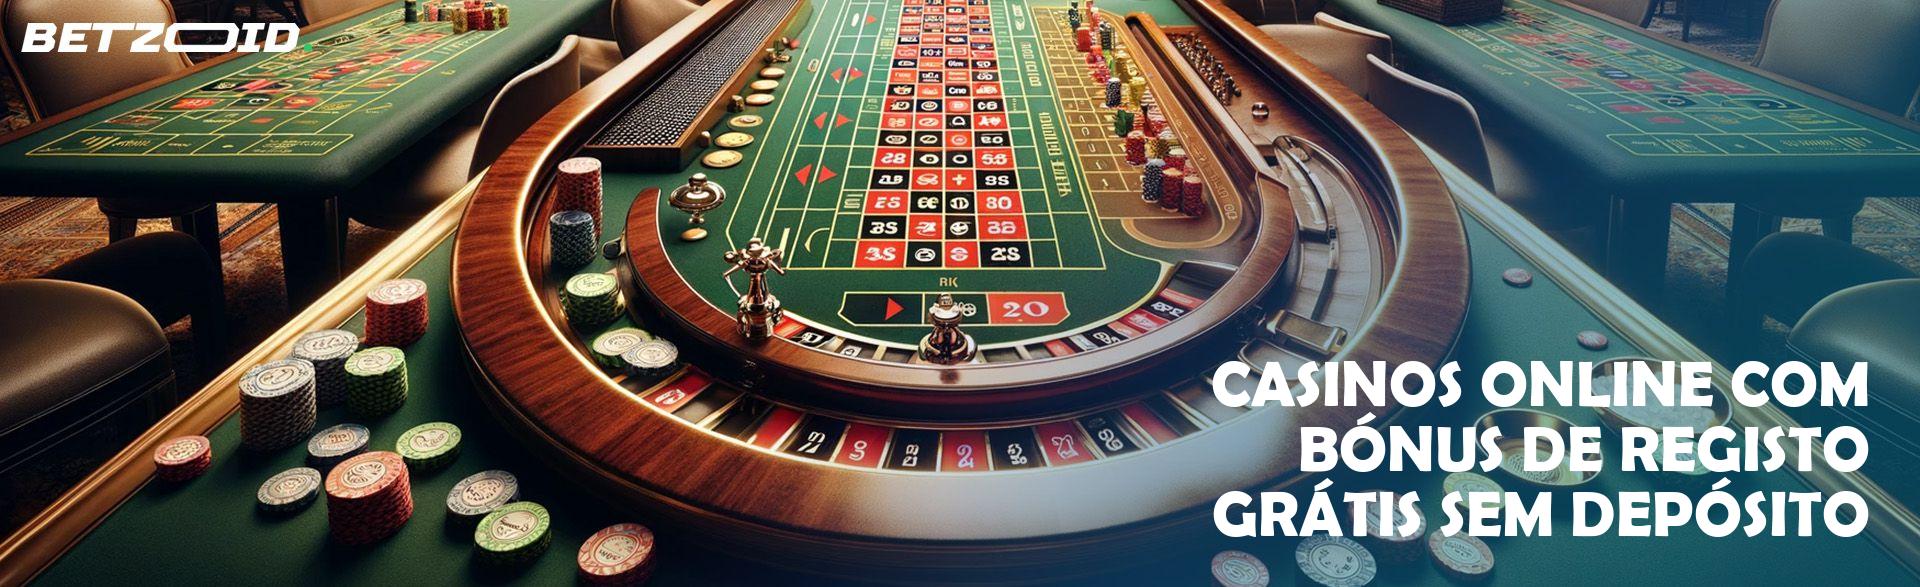 Casinos Online com Bónus de Registo Grátis sem Depósito.